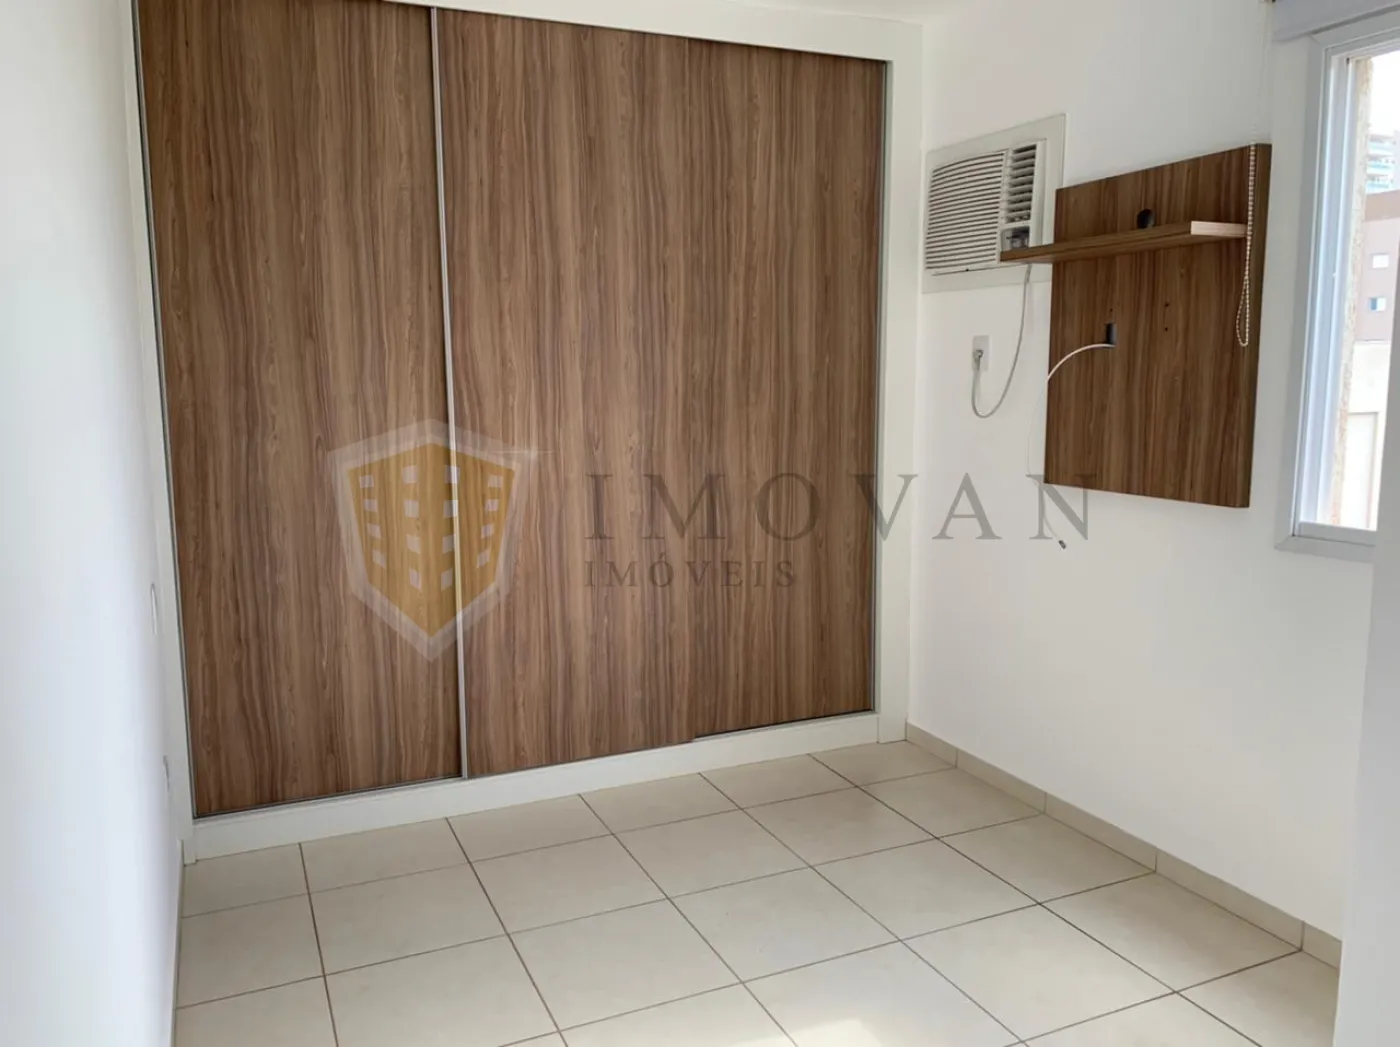 Comprar Apartamento / Padrão em Ribeirão Preto R$ 290.000,00 - Foto 10